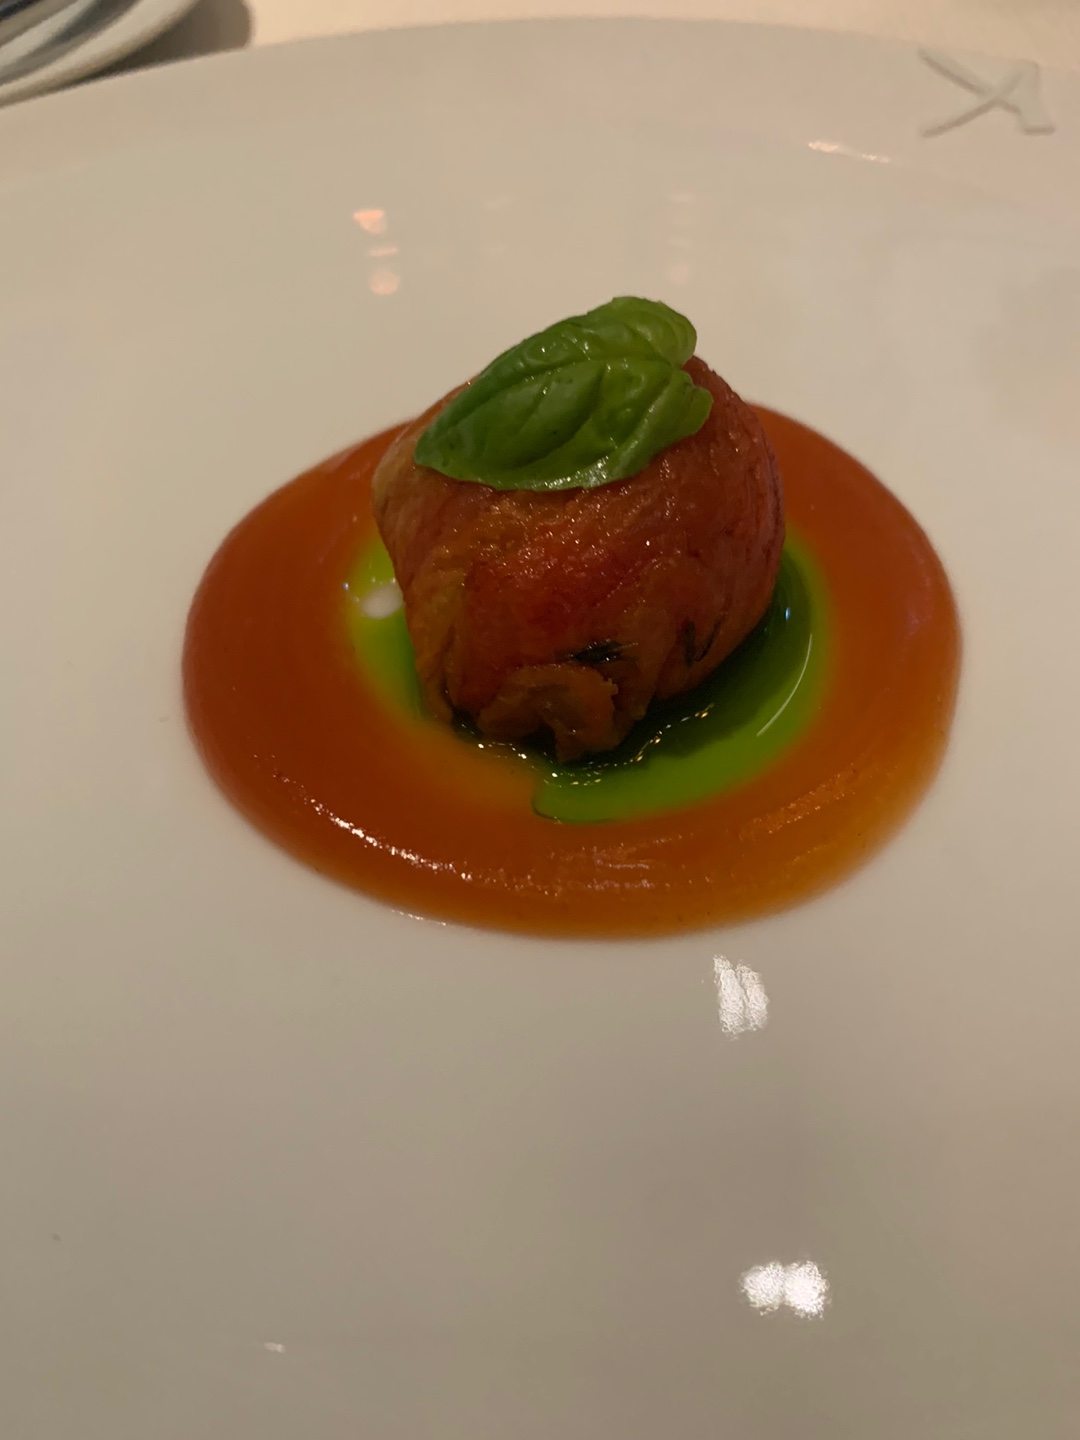 토마토 콩피로 감싼 파타고니아 새우